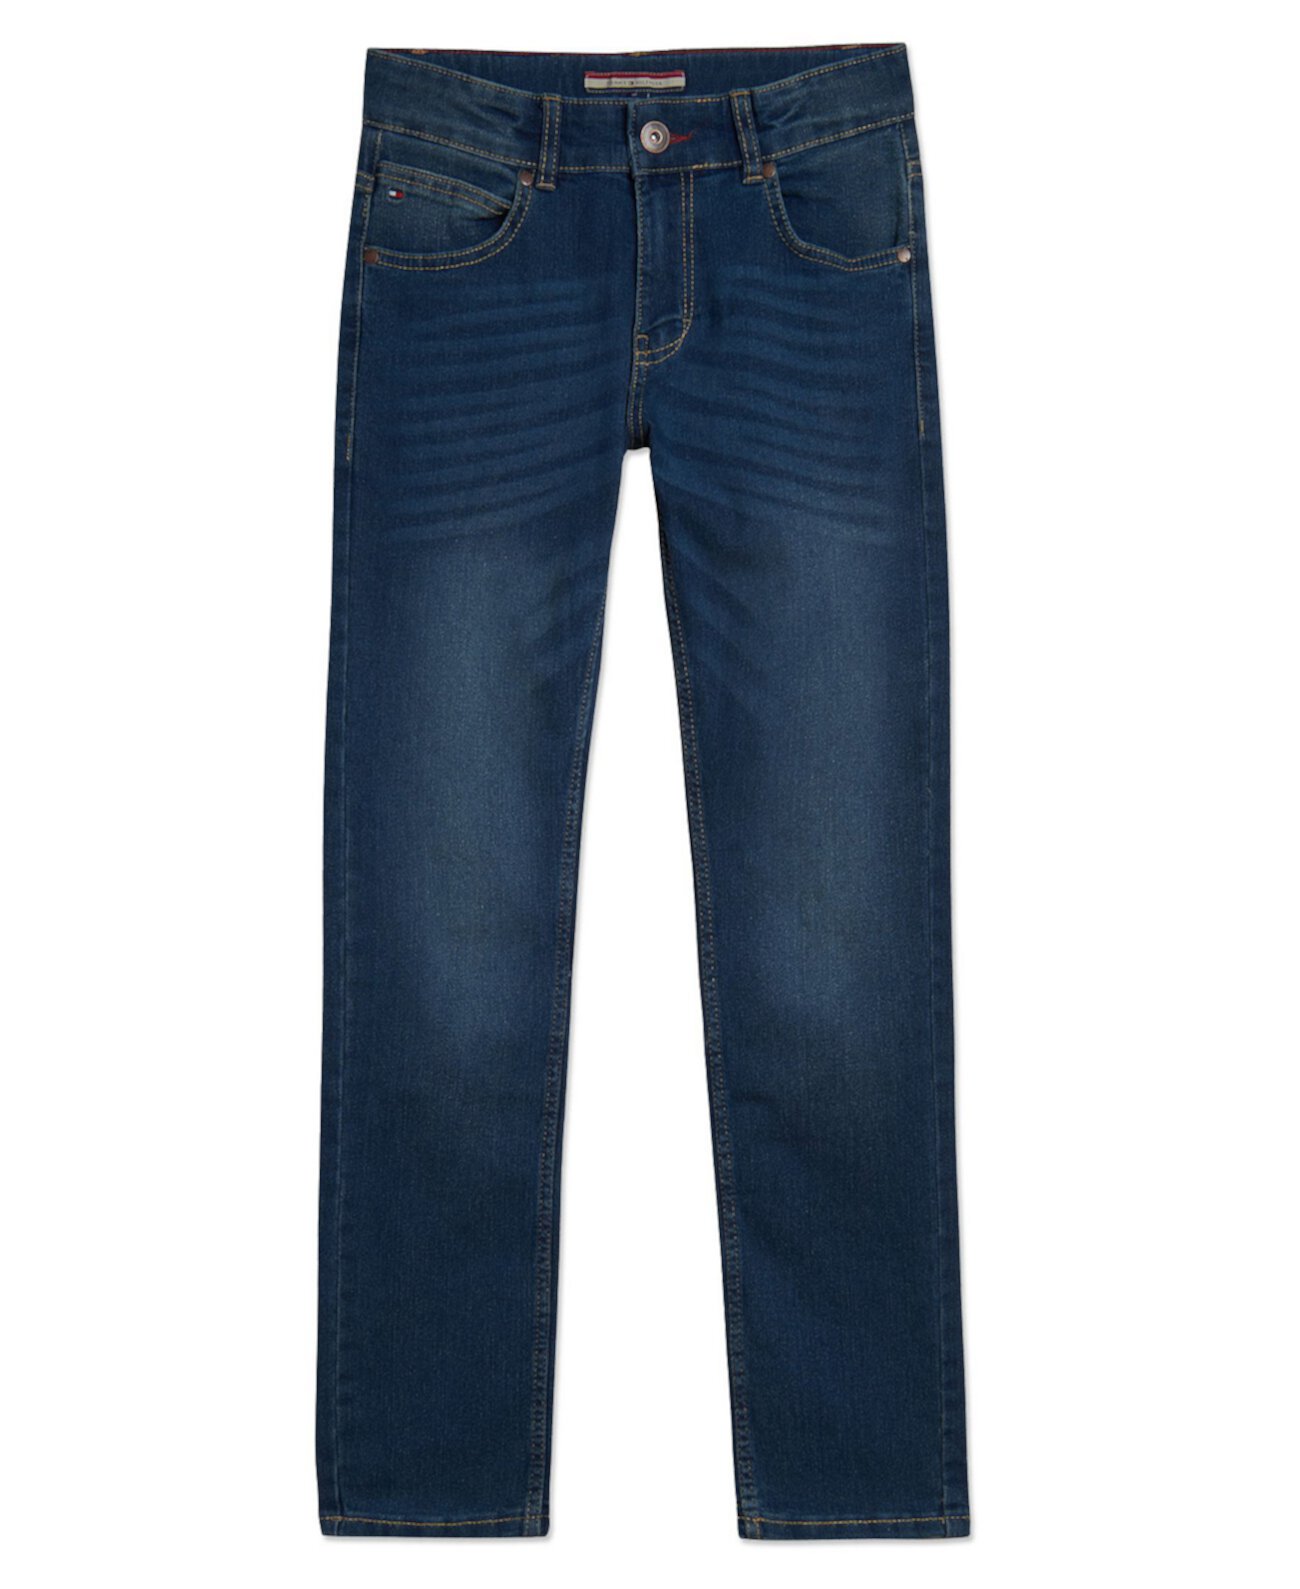 Джинсовые джинсы скинни стрейч-кроя Big Boys Ultra Rebel Tommy Hilfiger